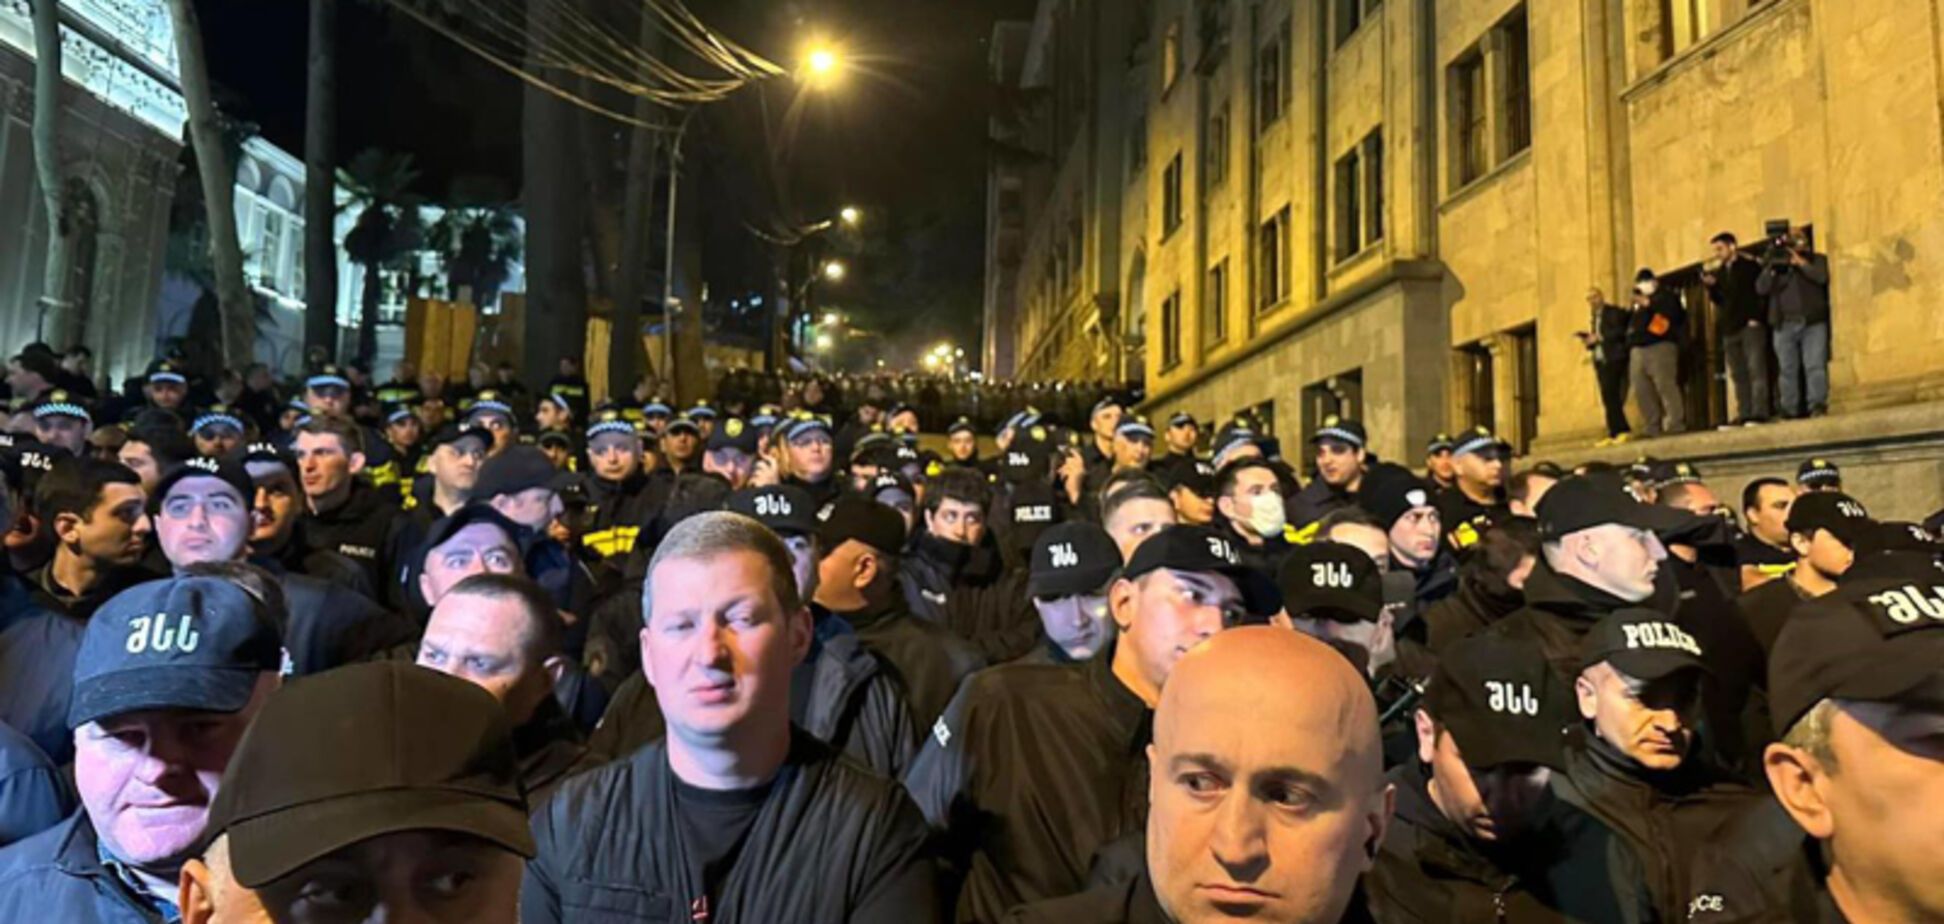 У Тбілісі поліція почала затримувати протестувальників проти закону про 'іноагентів'. Відео
